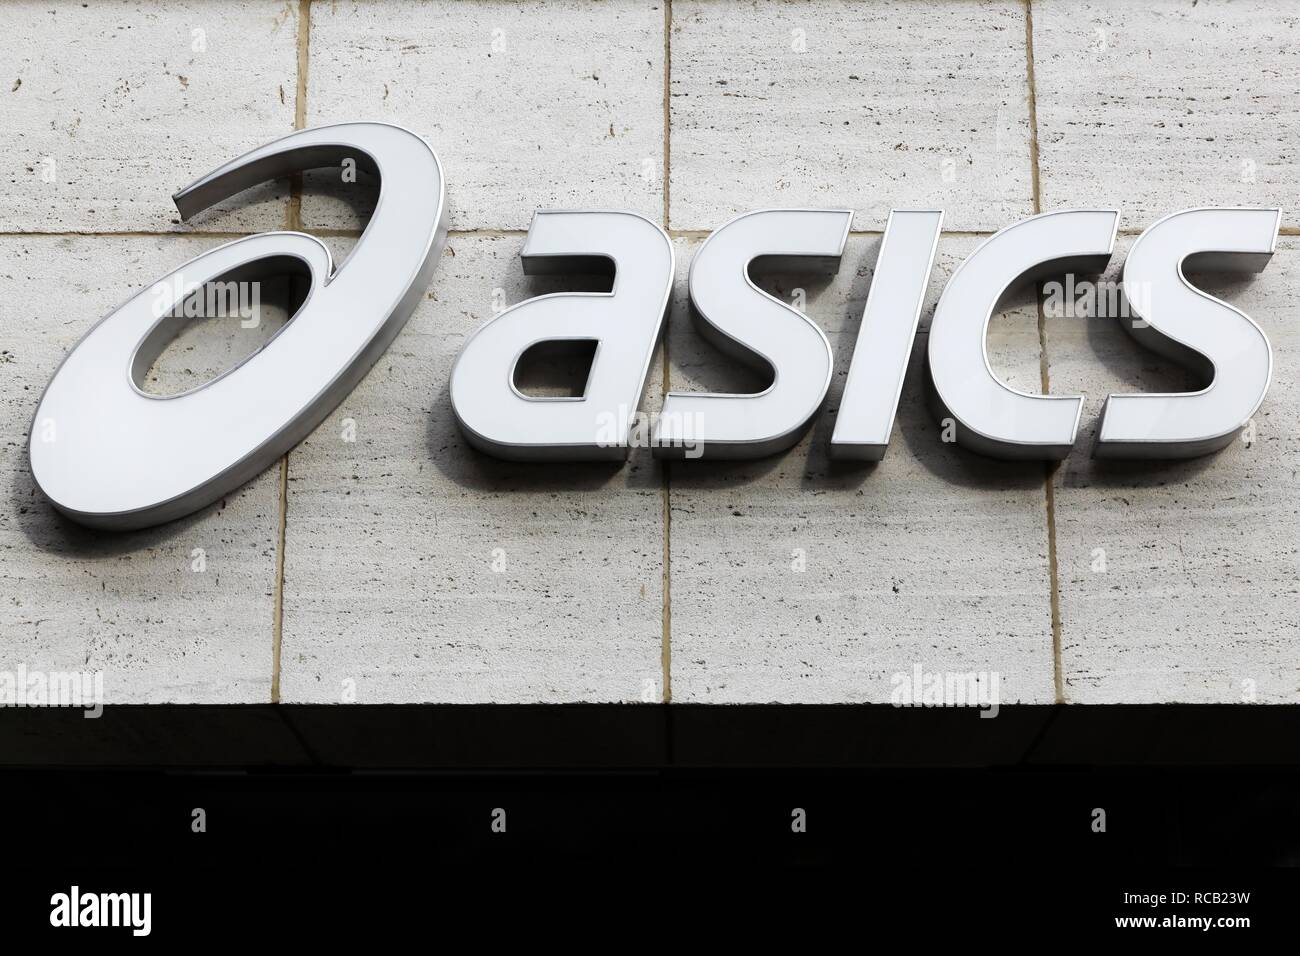 París, Francia - 25 de marzo de 2016: Asics logotipo en una pared. Asics es una empresa multinacional produce calzado y material deportivo Fotografía de stock - Alamy